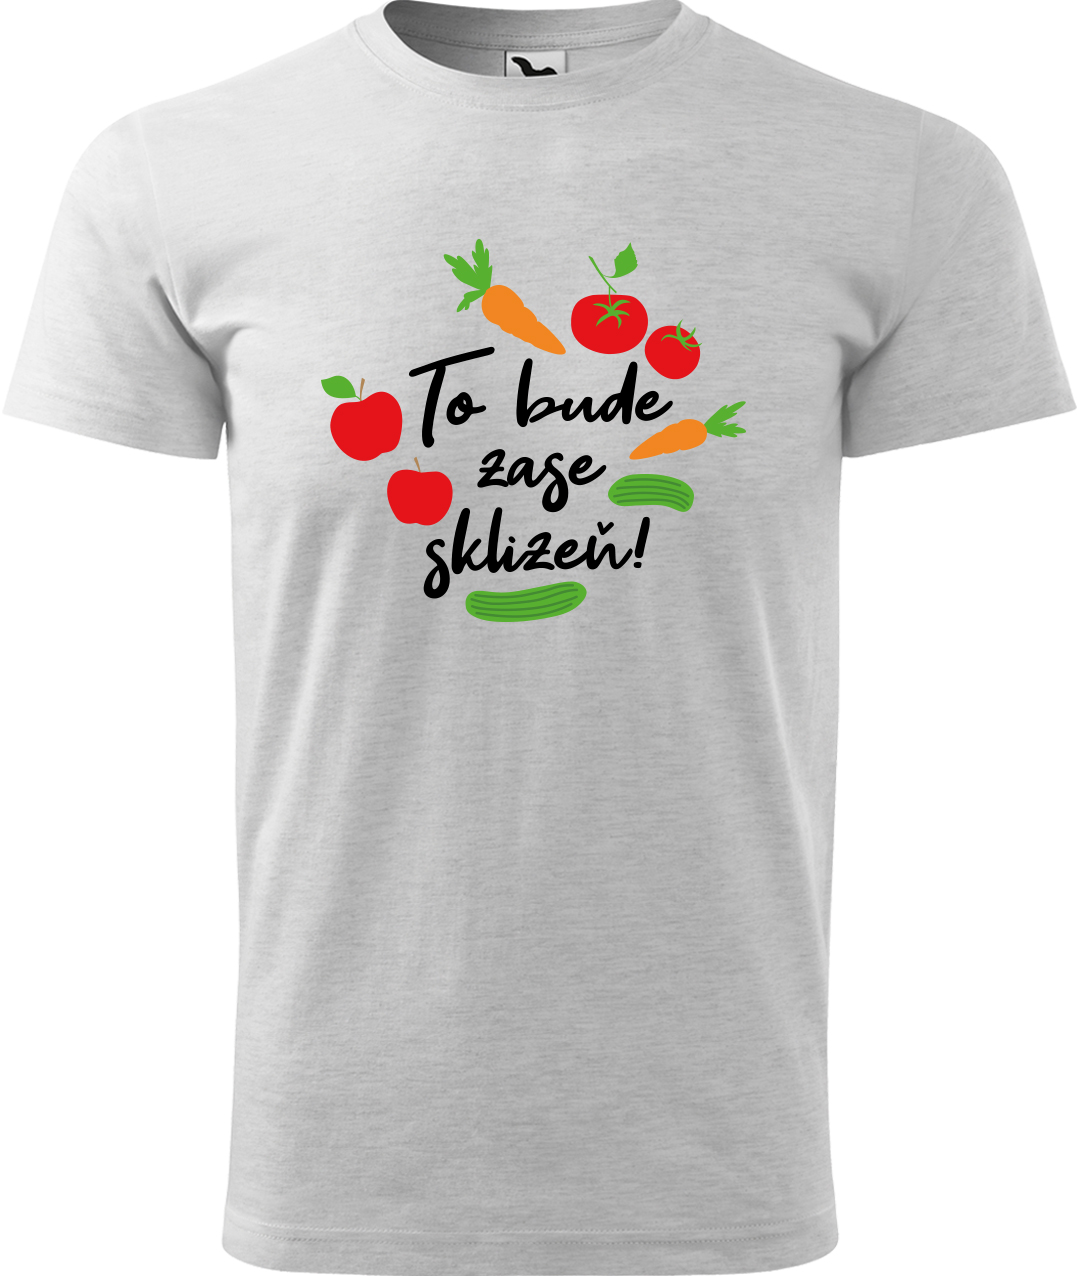 Tričko pro zahradníka - To bude zase sklizeň! Velikost: L, Barva: Světle šedý melír (03), Střih: pánský